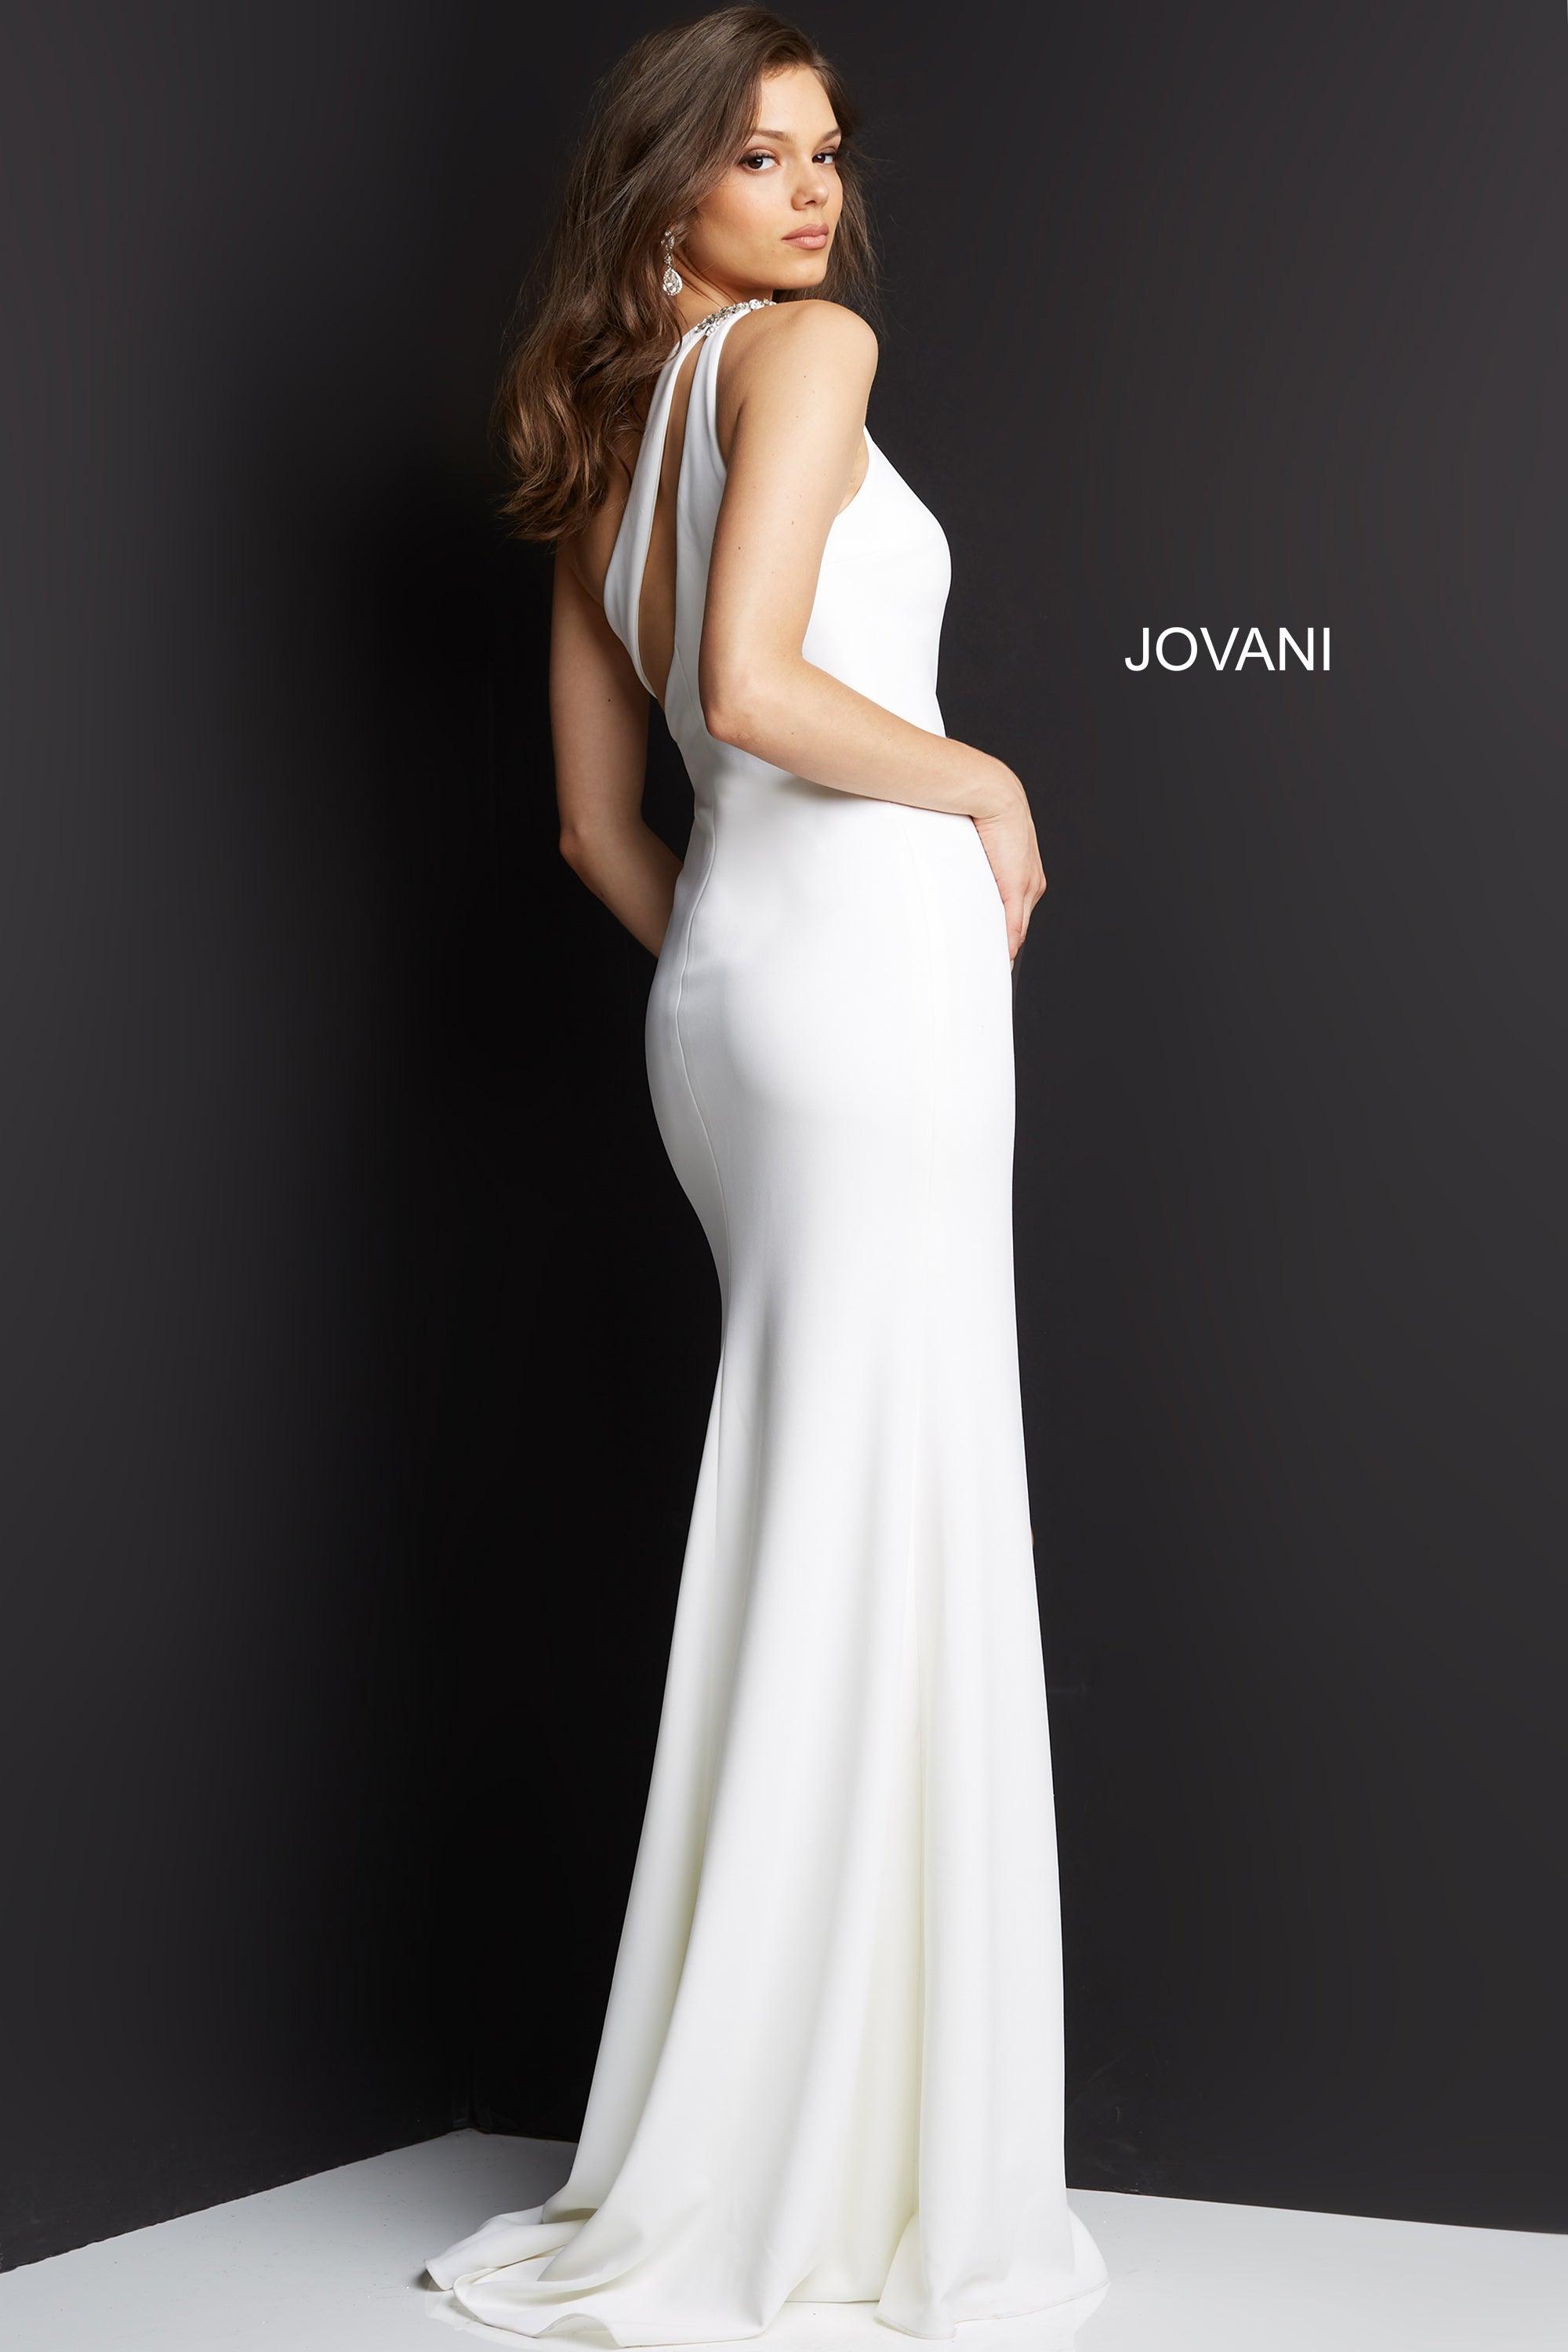 Jovani One Shoulder Long Formal Prom Dress 07173 - The Dress Outlet